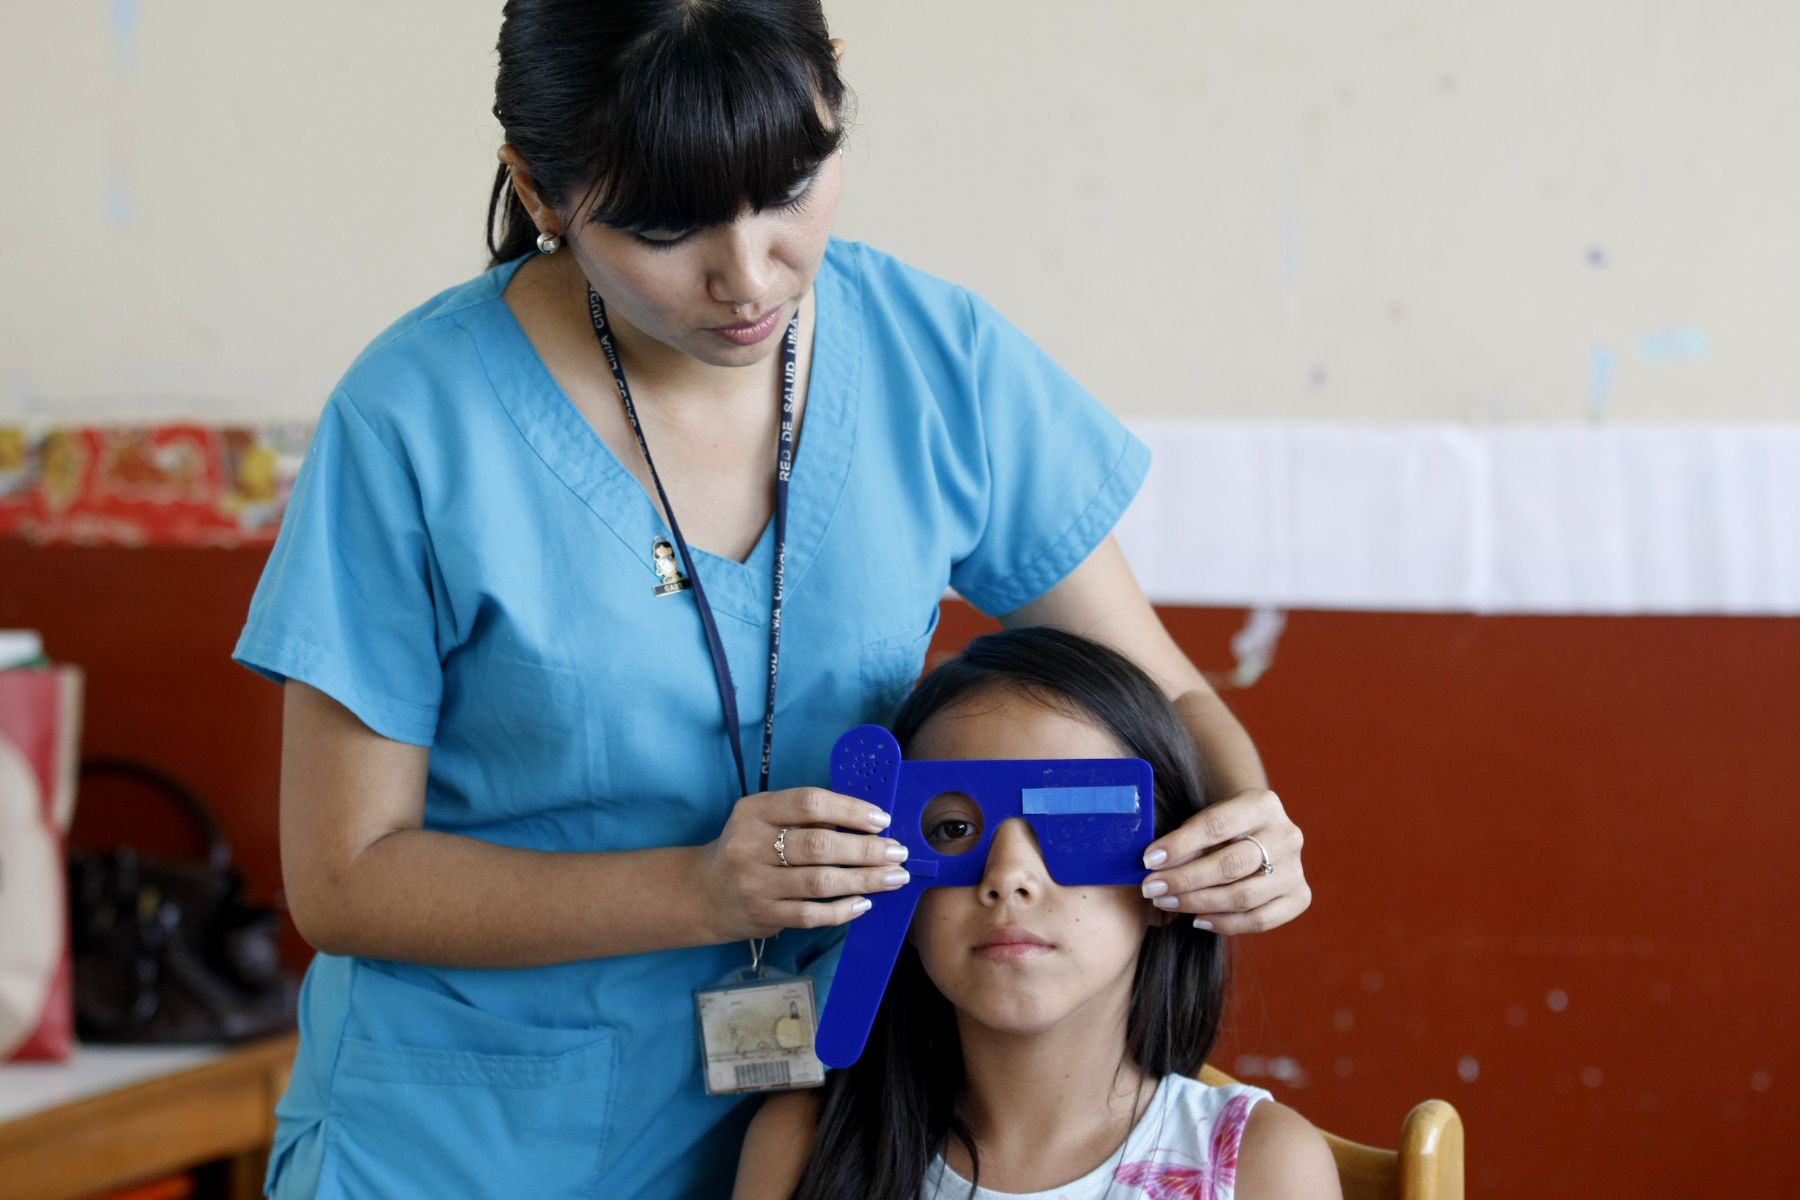 Actualmente, los problemas visuales en niños se ha incrementado por el uso de aparatos tecnológicos. Foto: ANDINA/Norman Córdova